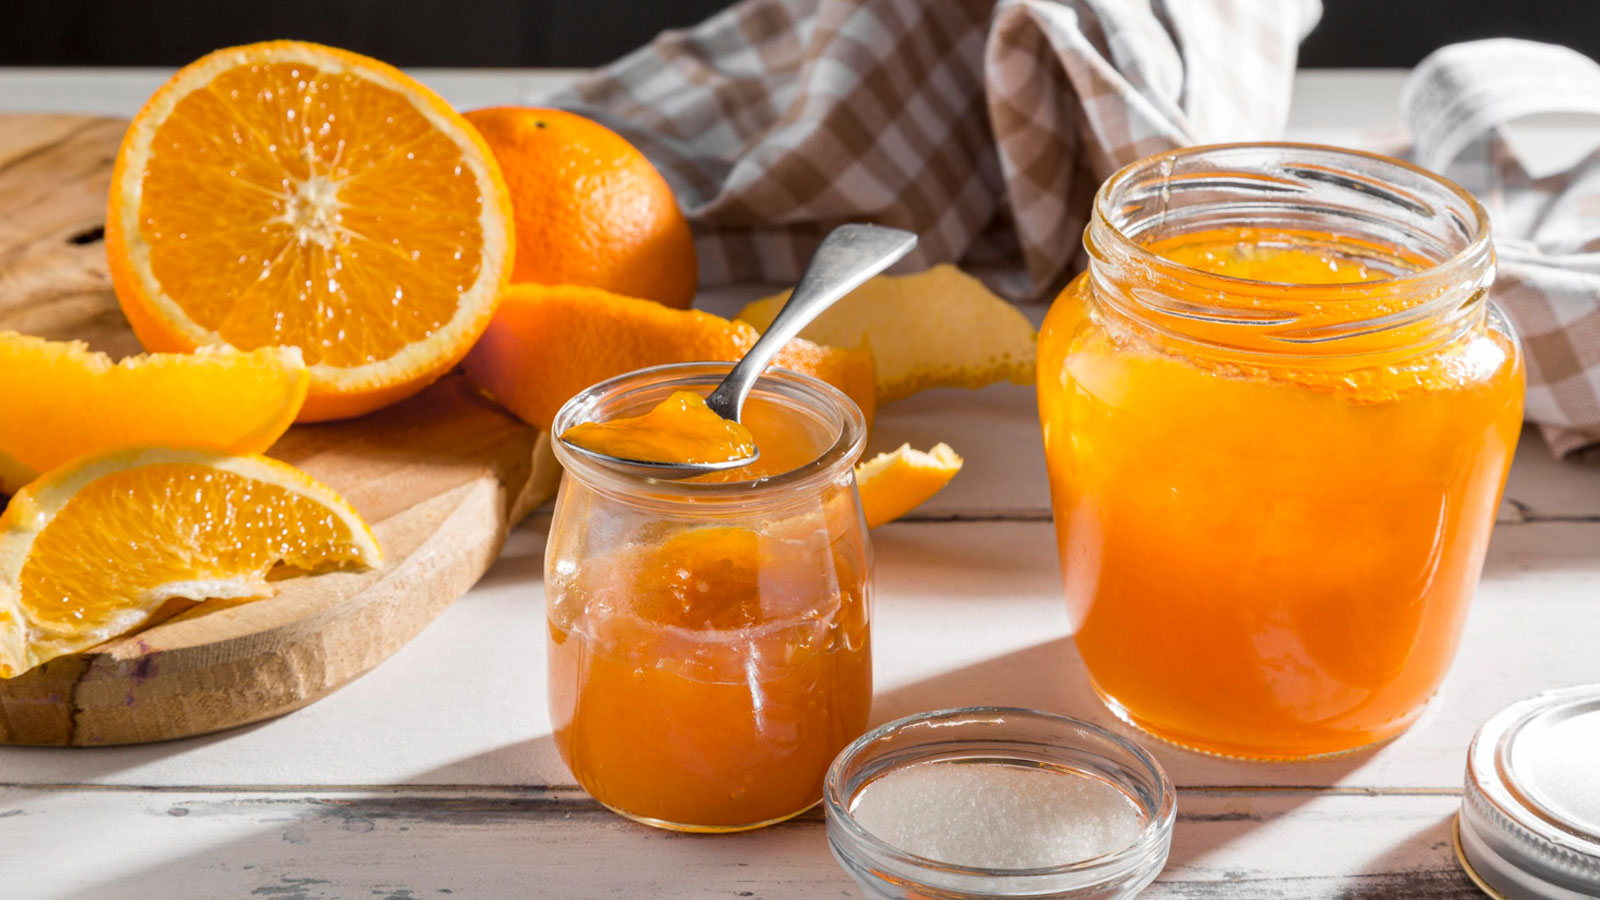 Portakal reçeli nasıl yapılır? Tadına doyum olmayan 3 farklı tarif